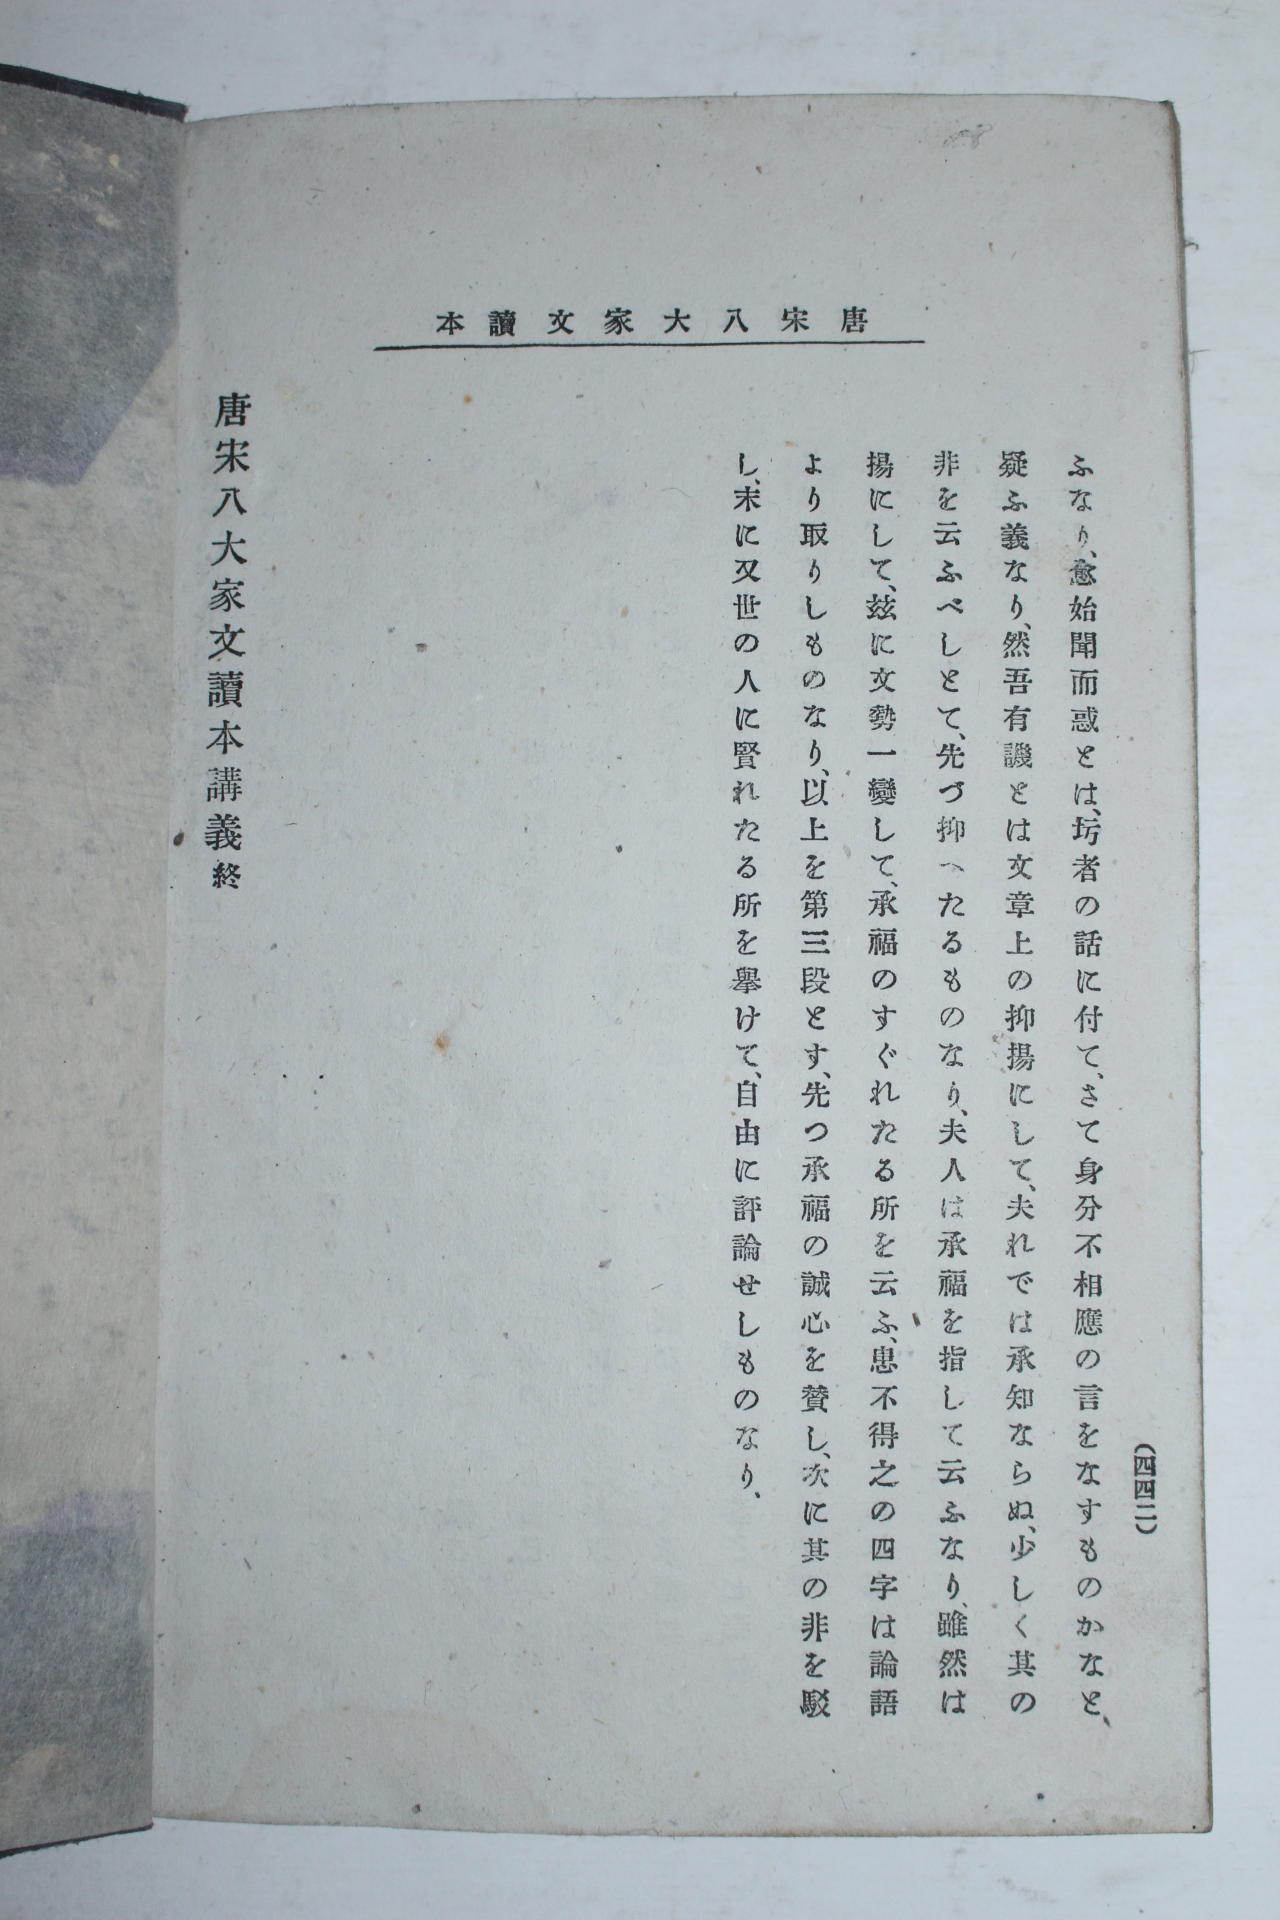 에도시기 일본간행 당송팔가문(唐宋八家文) 2책